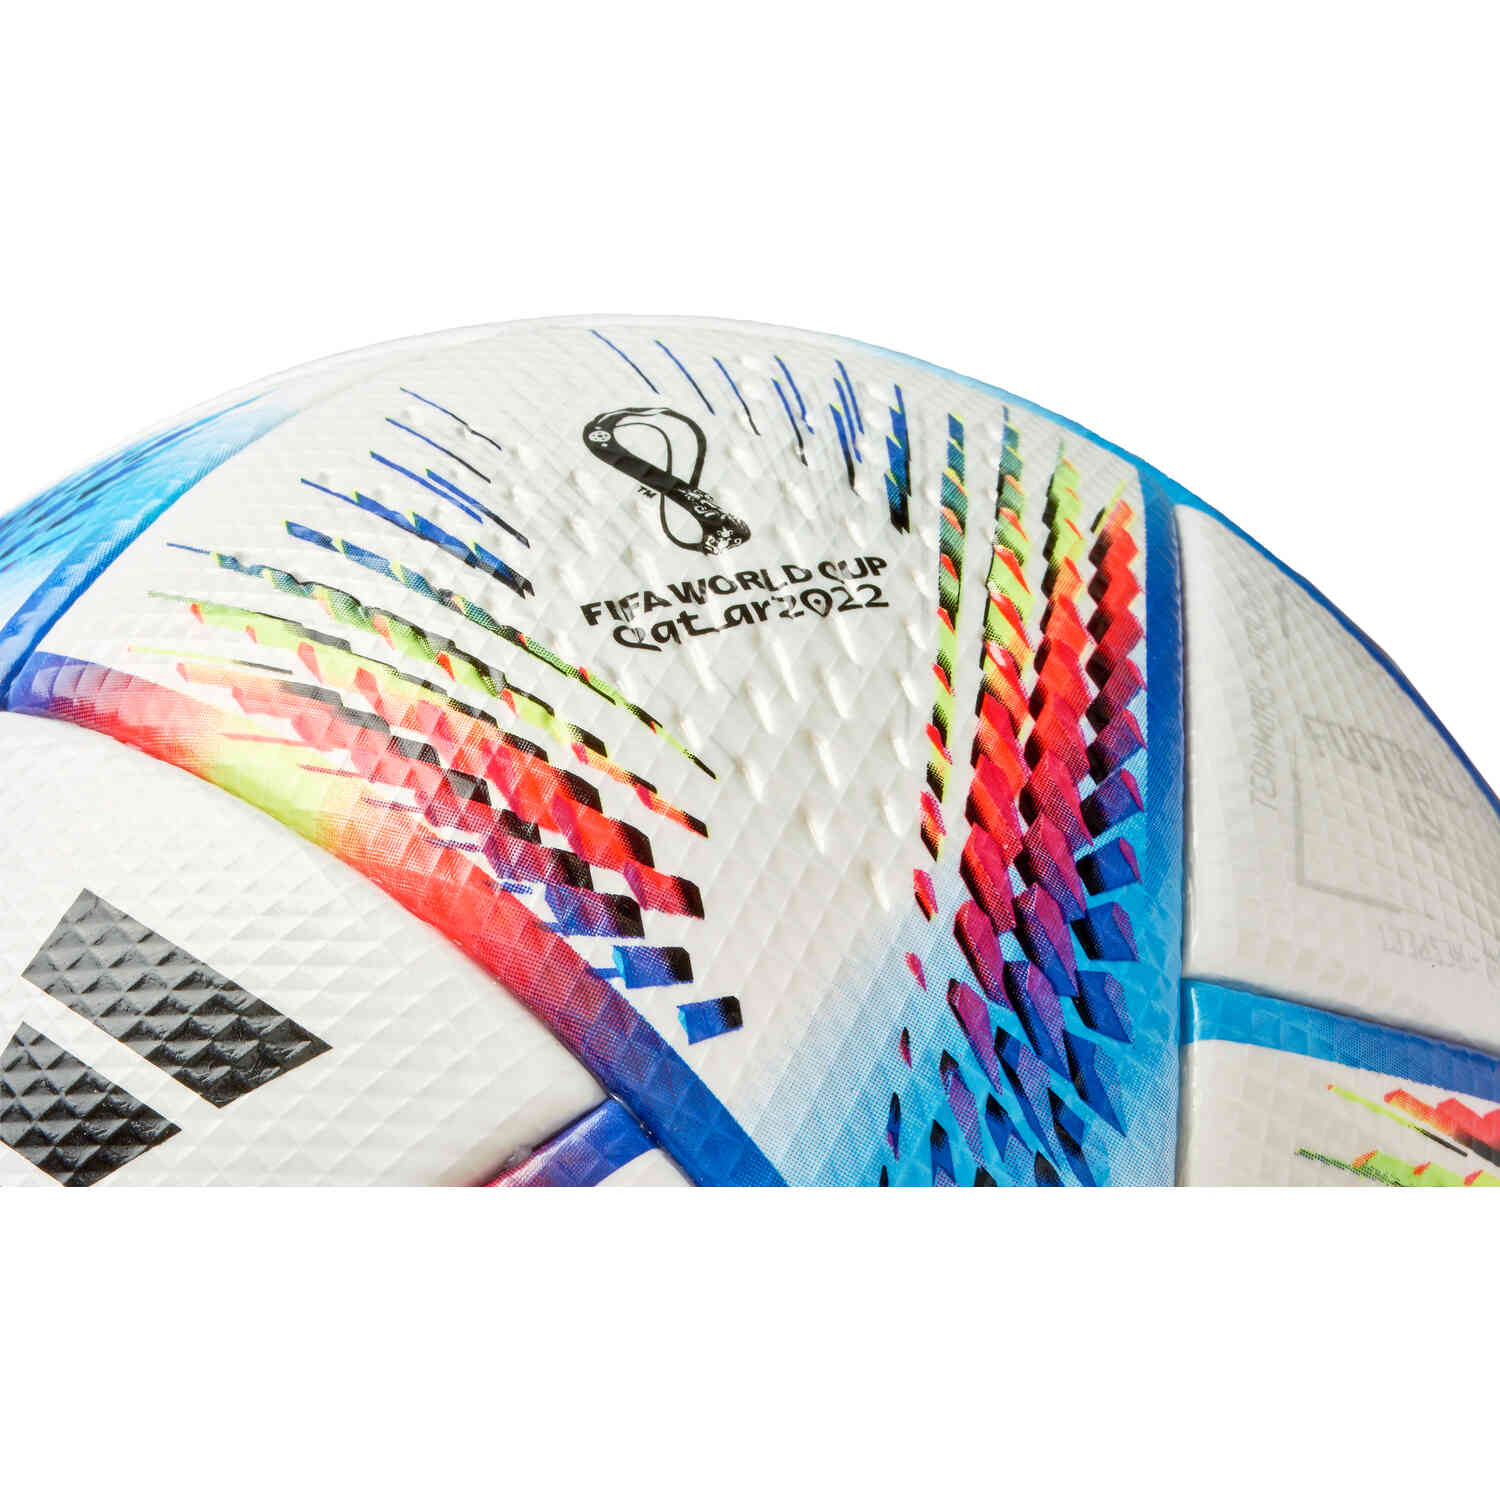 Adidas Fifa World Cup Qatar 2022 backpack